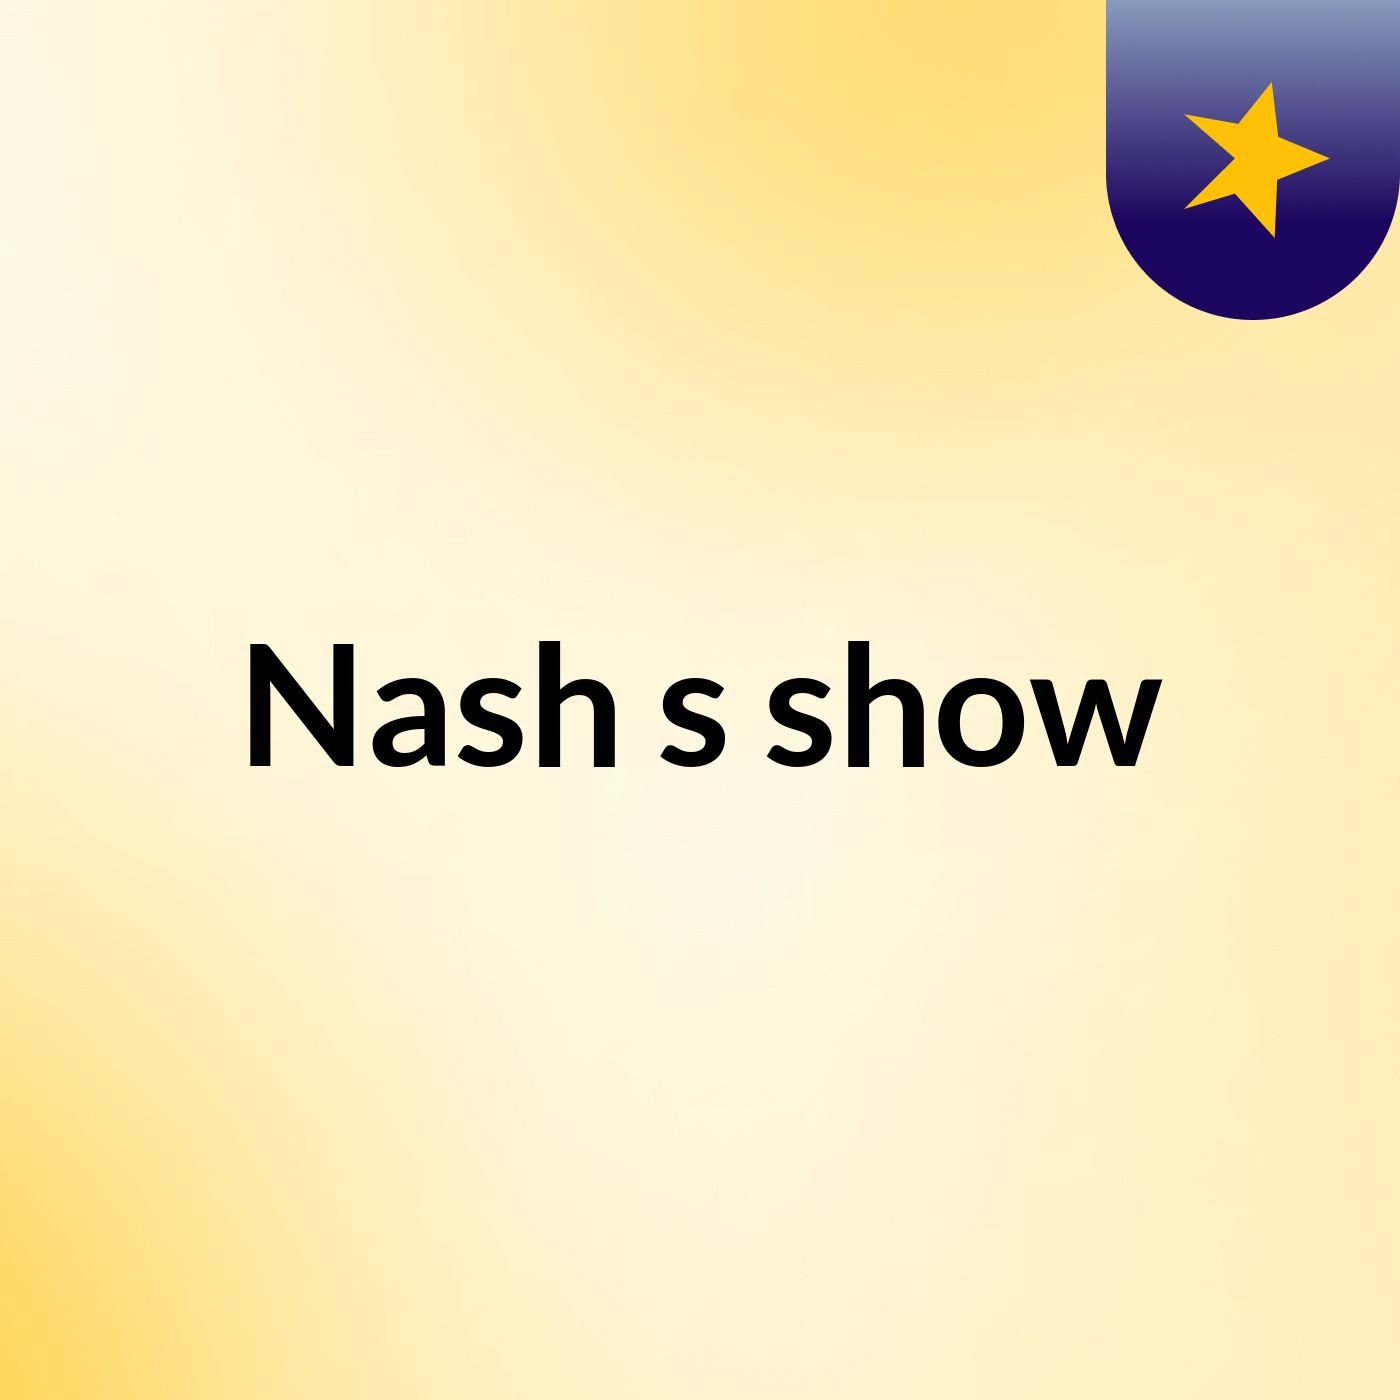 Nash's show